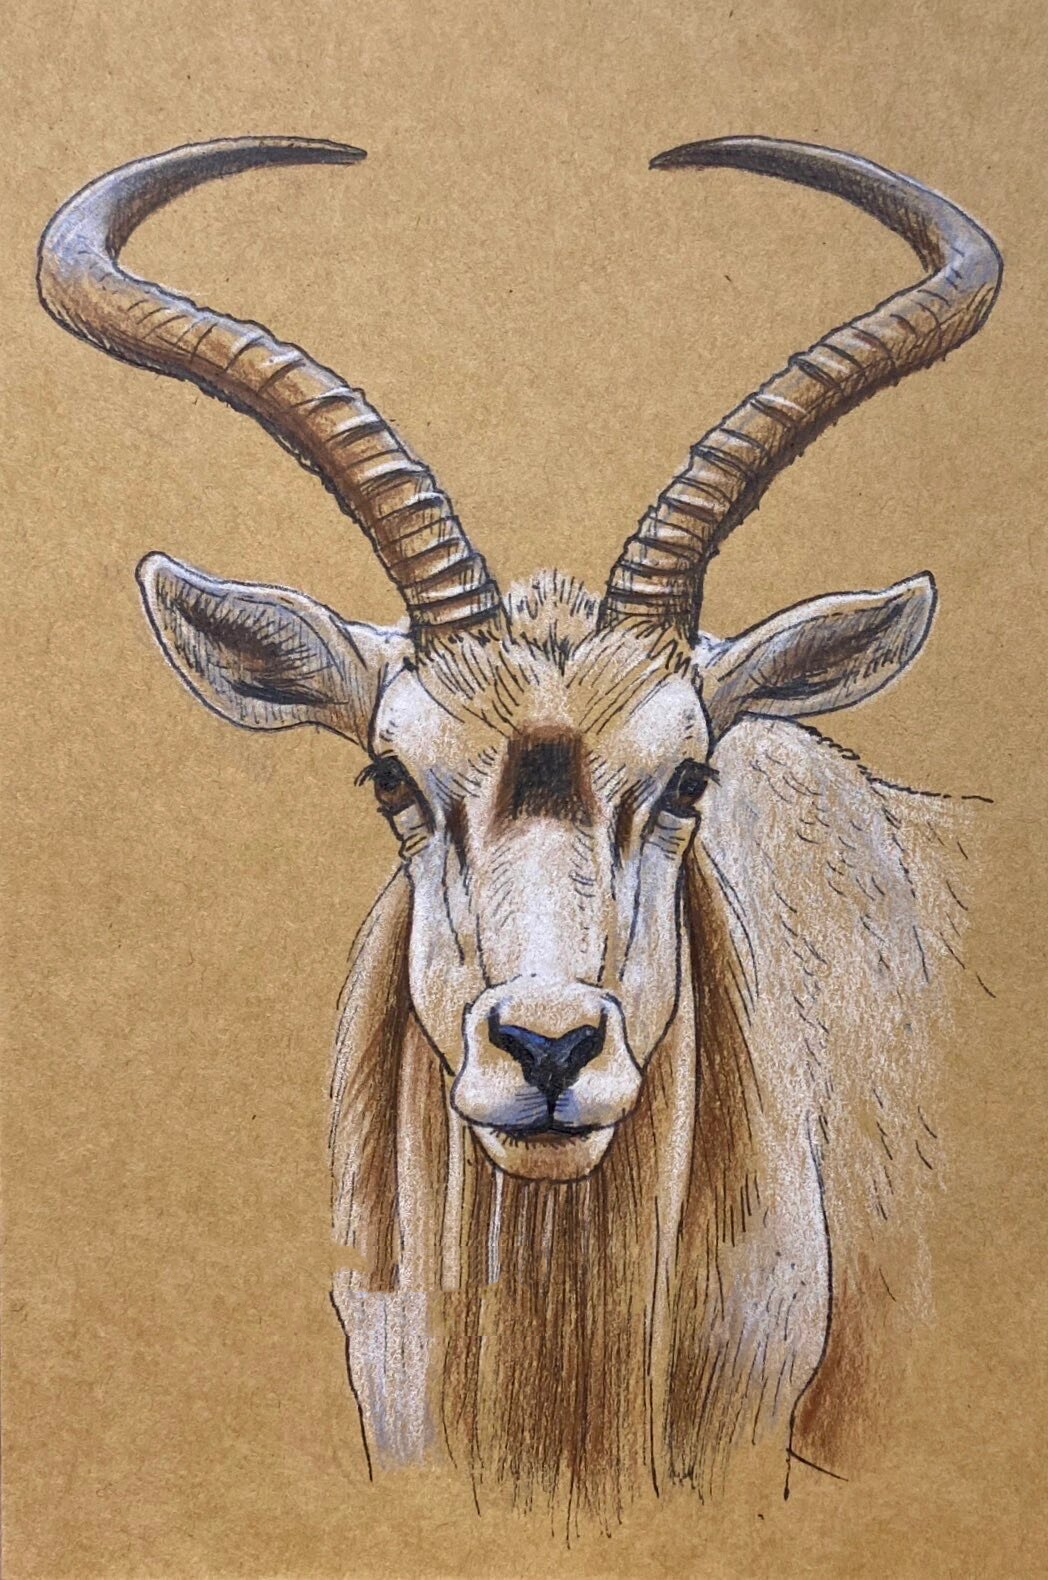 彩铅动物系列—藏羚羊(过程)少儿美术 这次的颜色处理的比较简单,同学